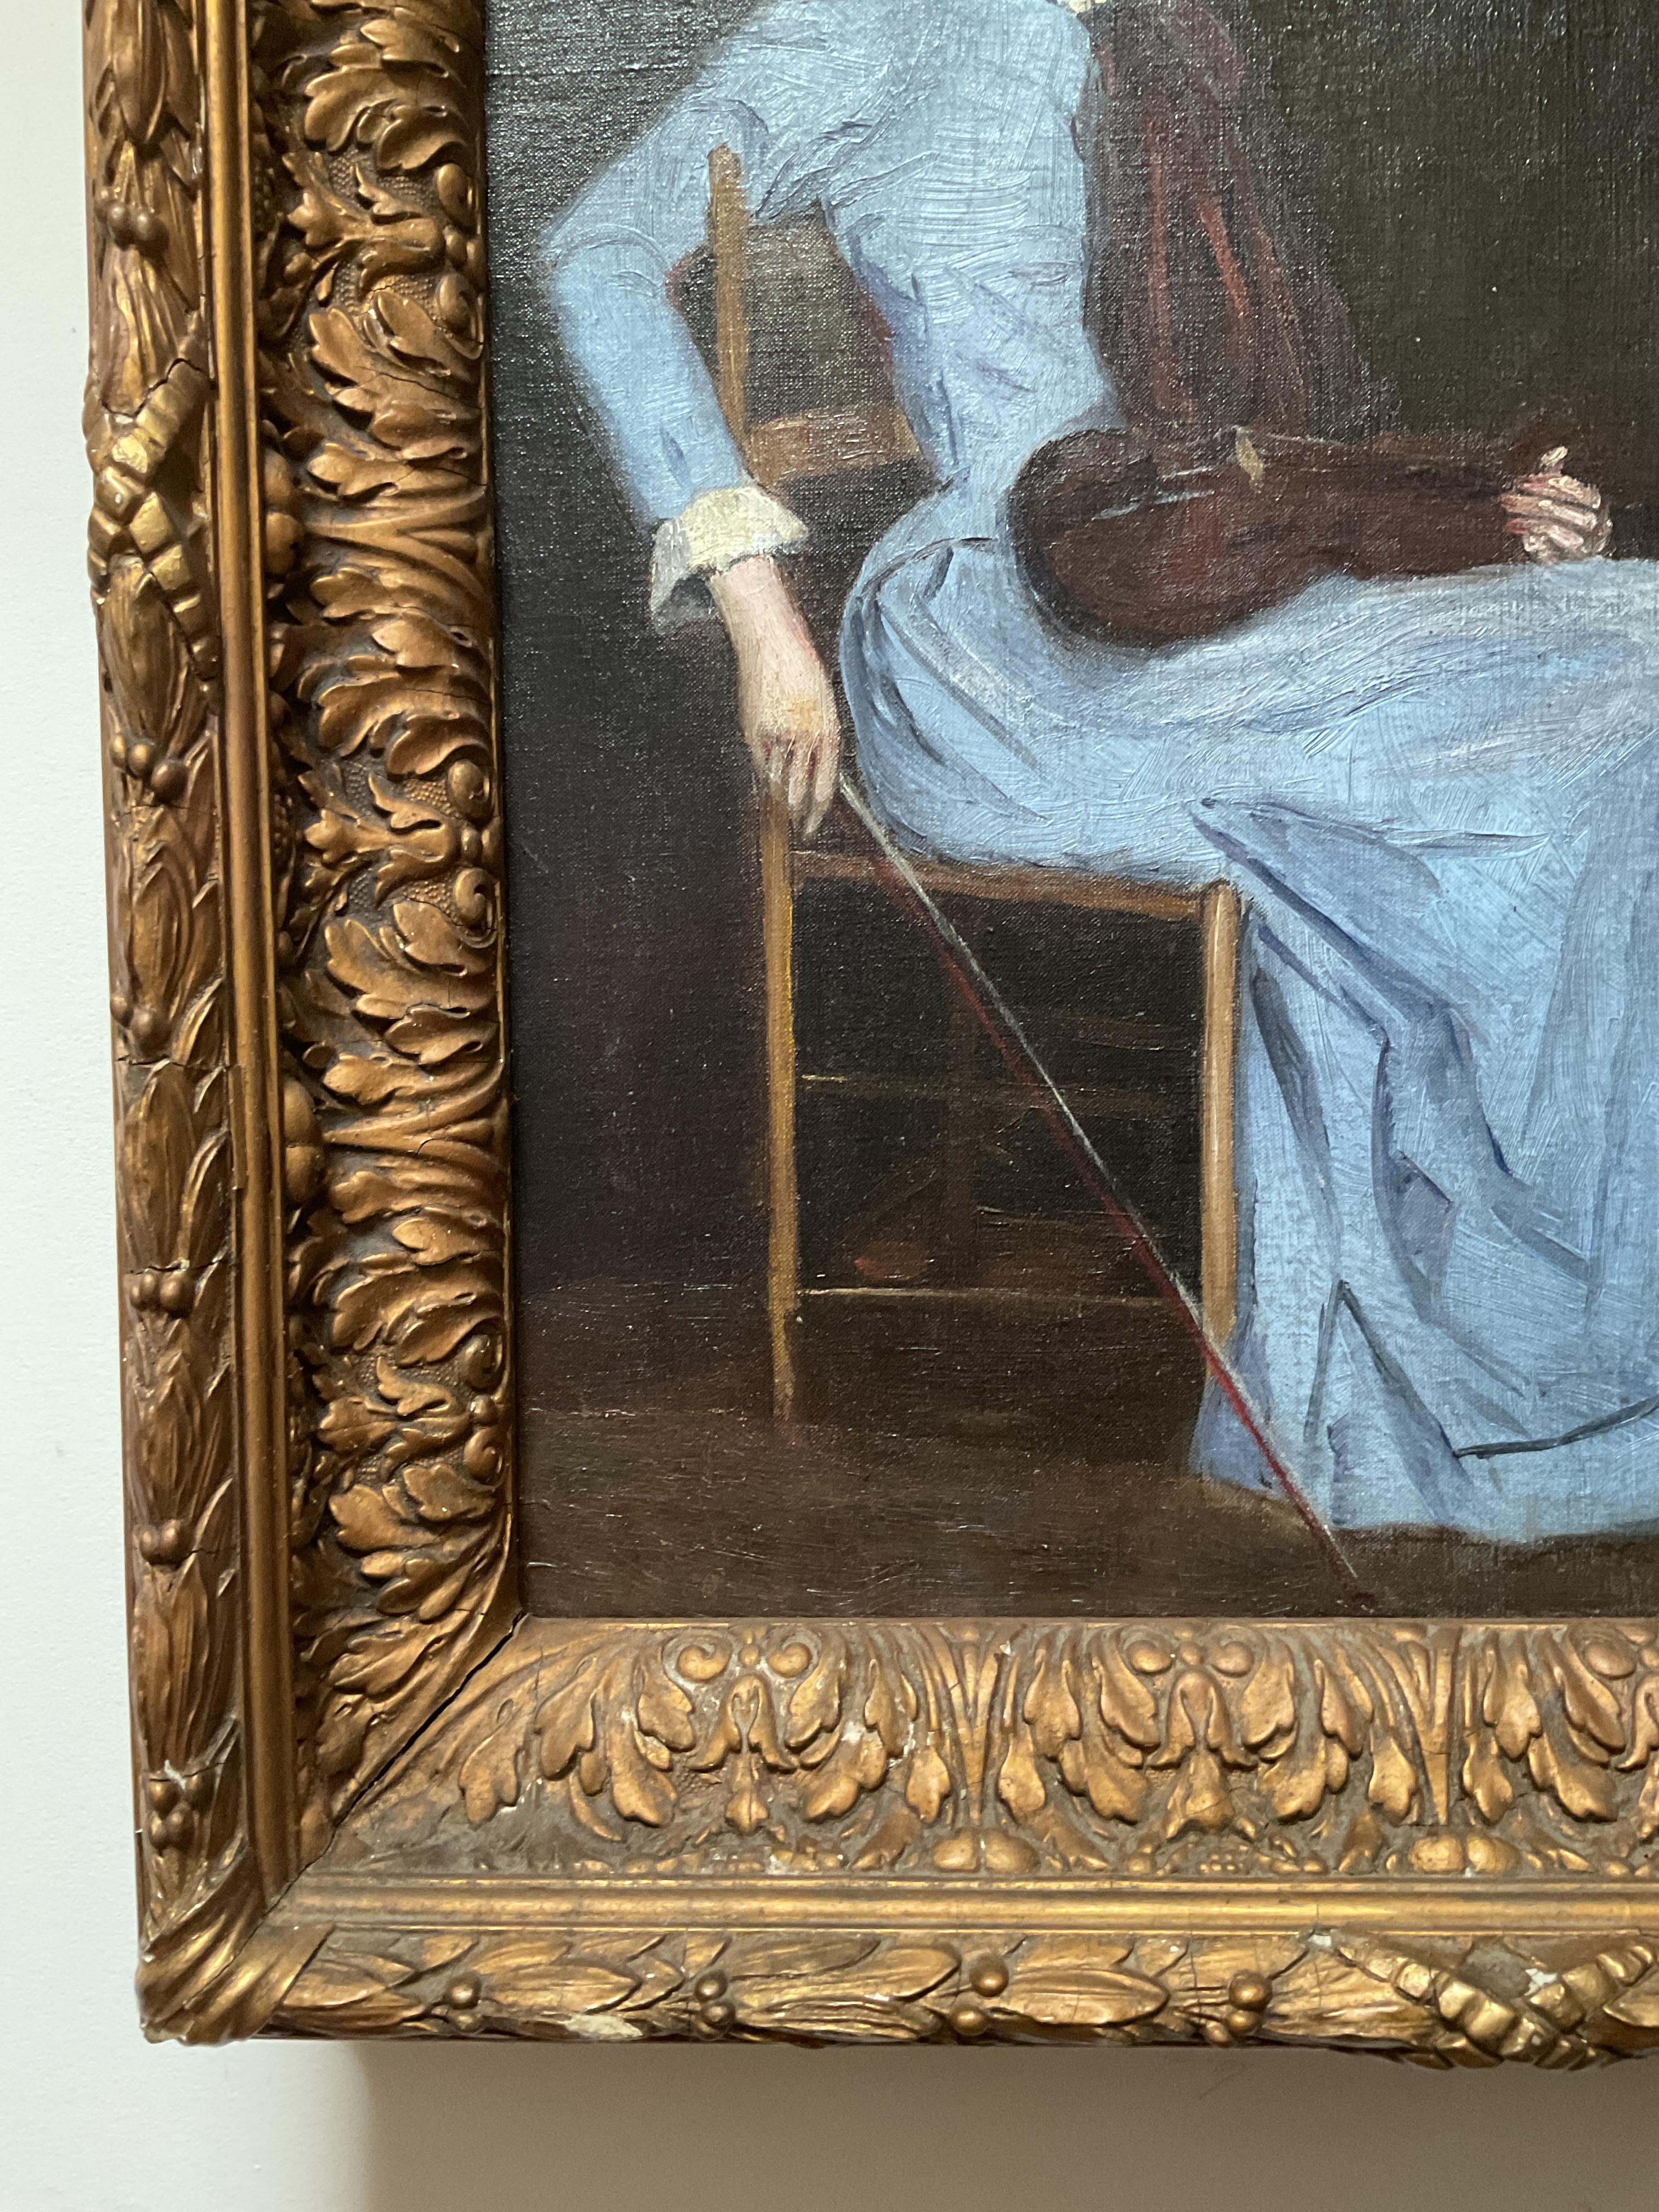 Bien que non signé, il s'agit d'un portrait très bien exécuté d'un violoniste assis dans un cadre feutré. Il s'agit certainement d'un bâtiment de l'école de Boston datant de la toute fin du XIXe siècle. La femme, représentée de manière quelque peu